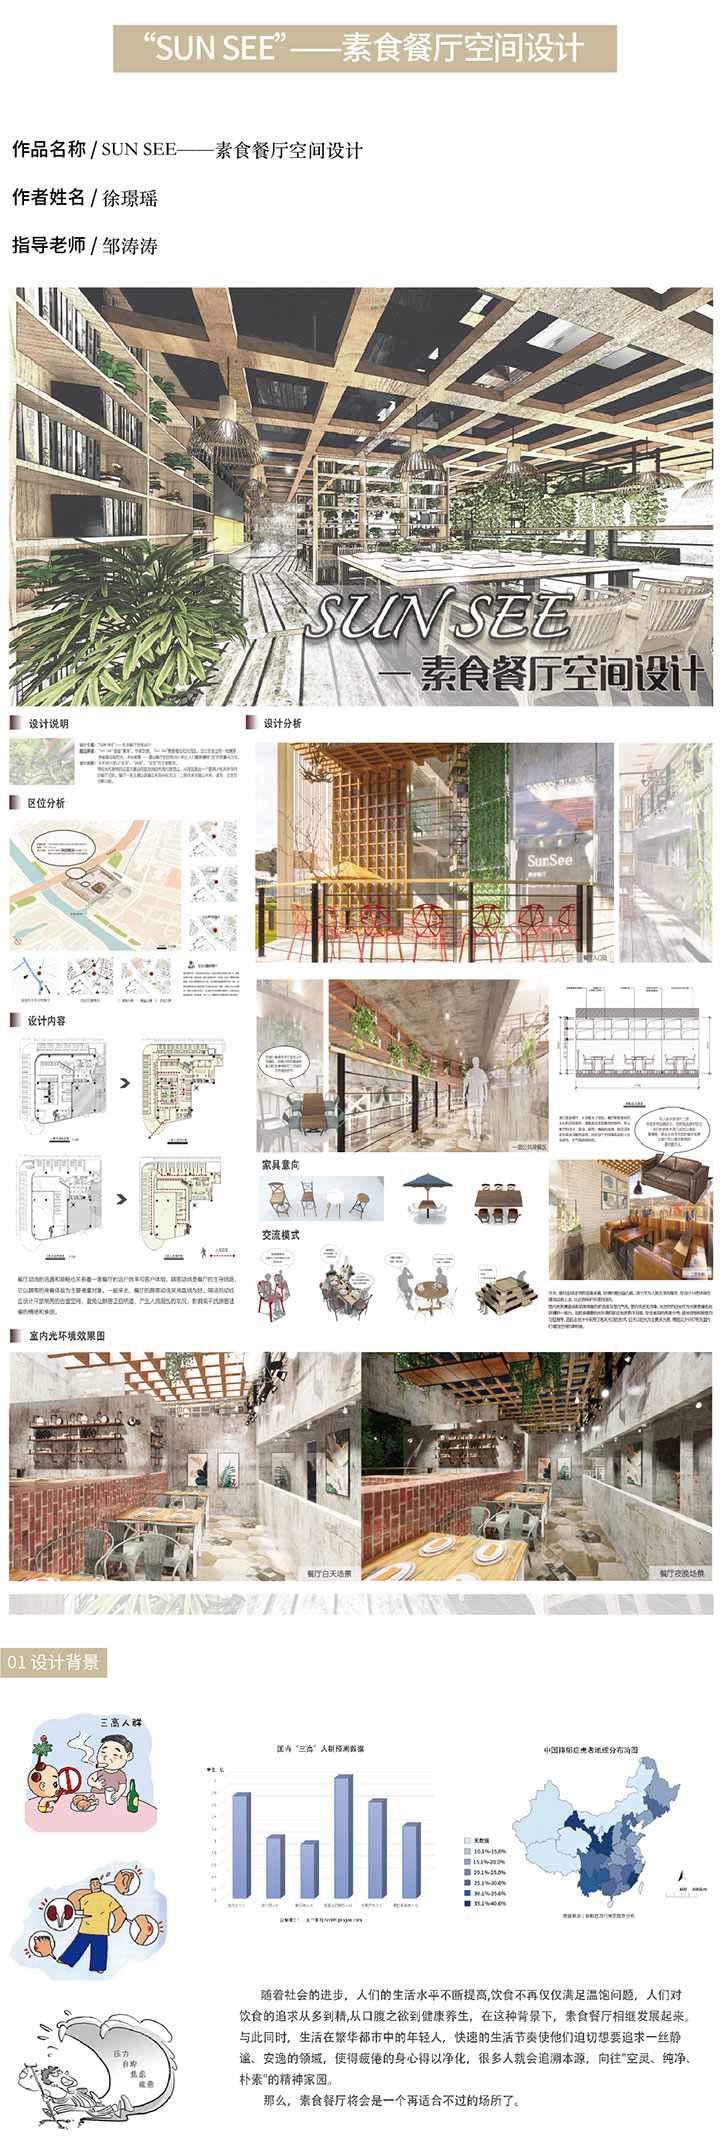 环境设计——素食餐厅空间设计-设计中国